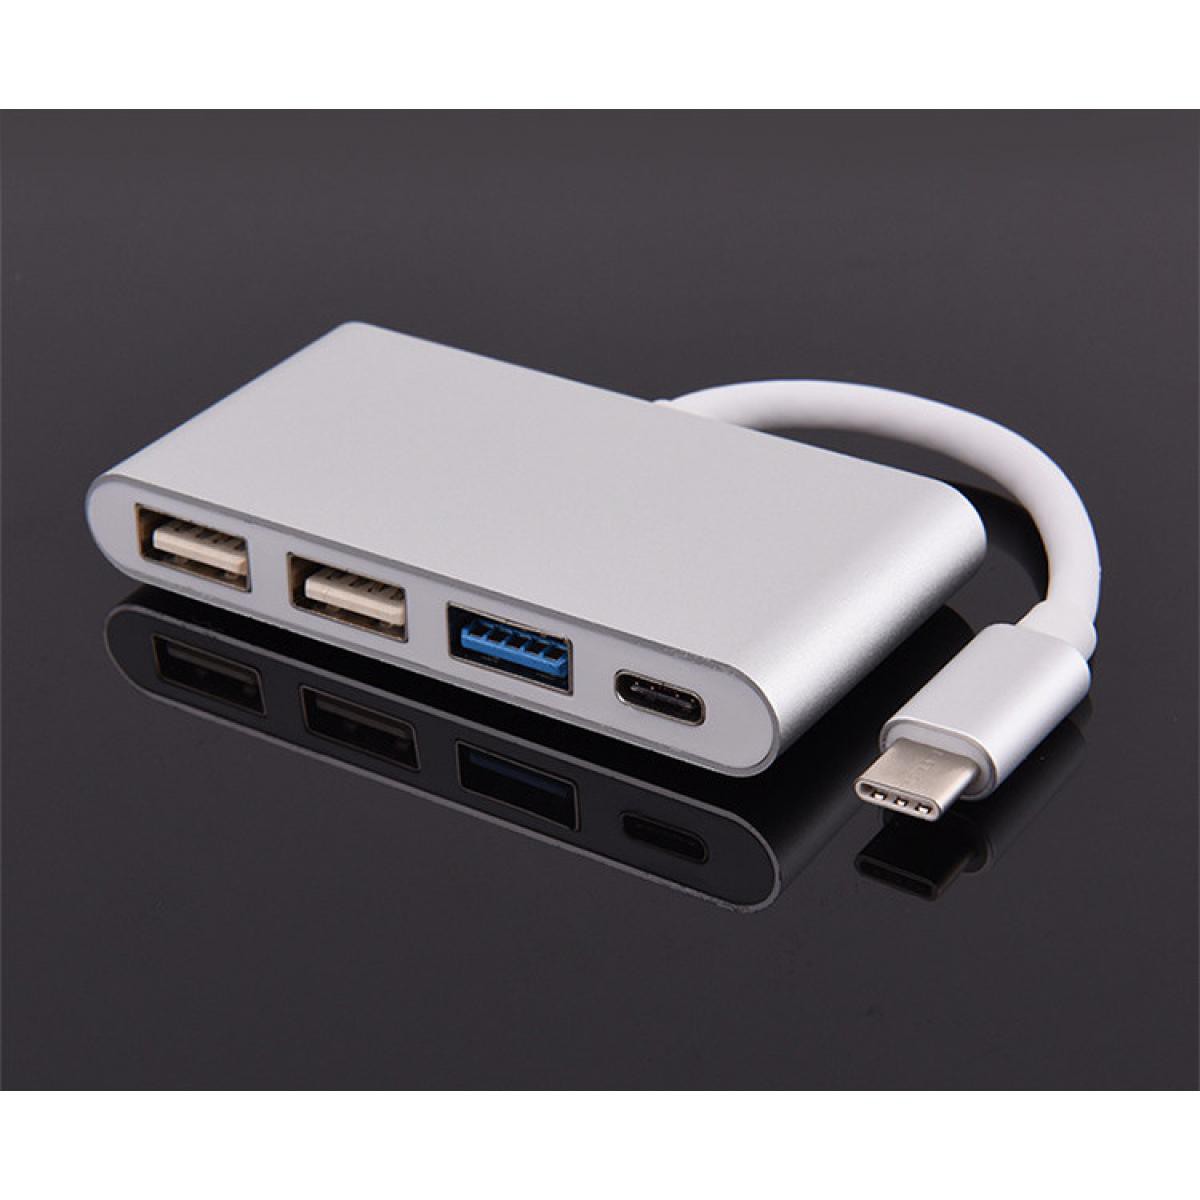 Shot - Multi Adaptateur 4 en 1 Type C pour INTEX Aqua Secure Smartphone Hub 2 ports USB 2.0 1 Port USB 3.0 (ARGENT) - Hub